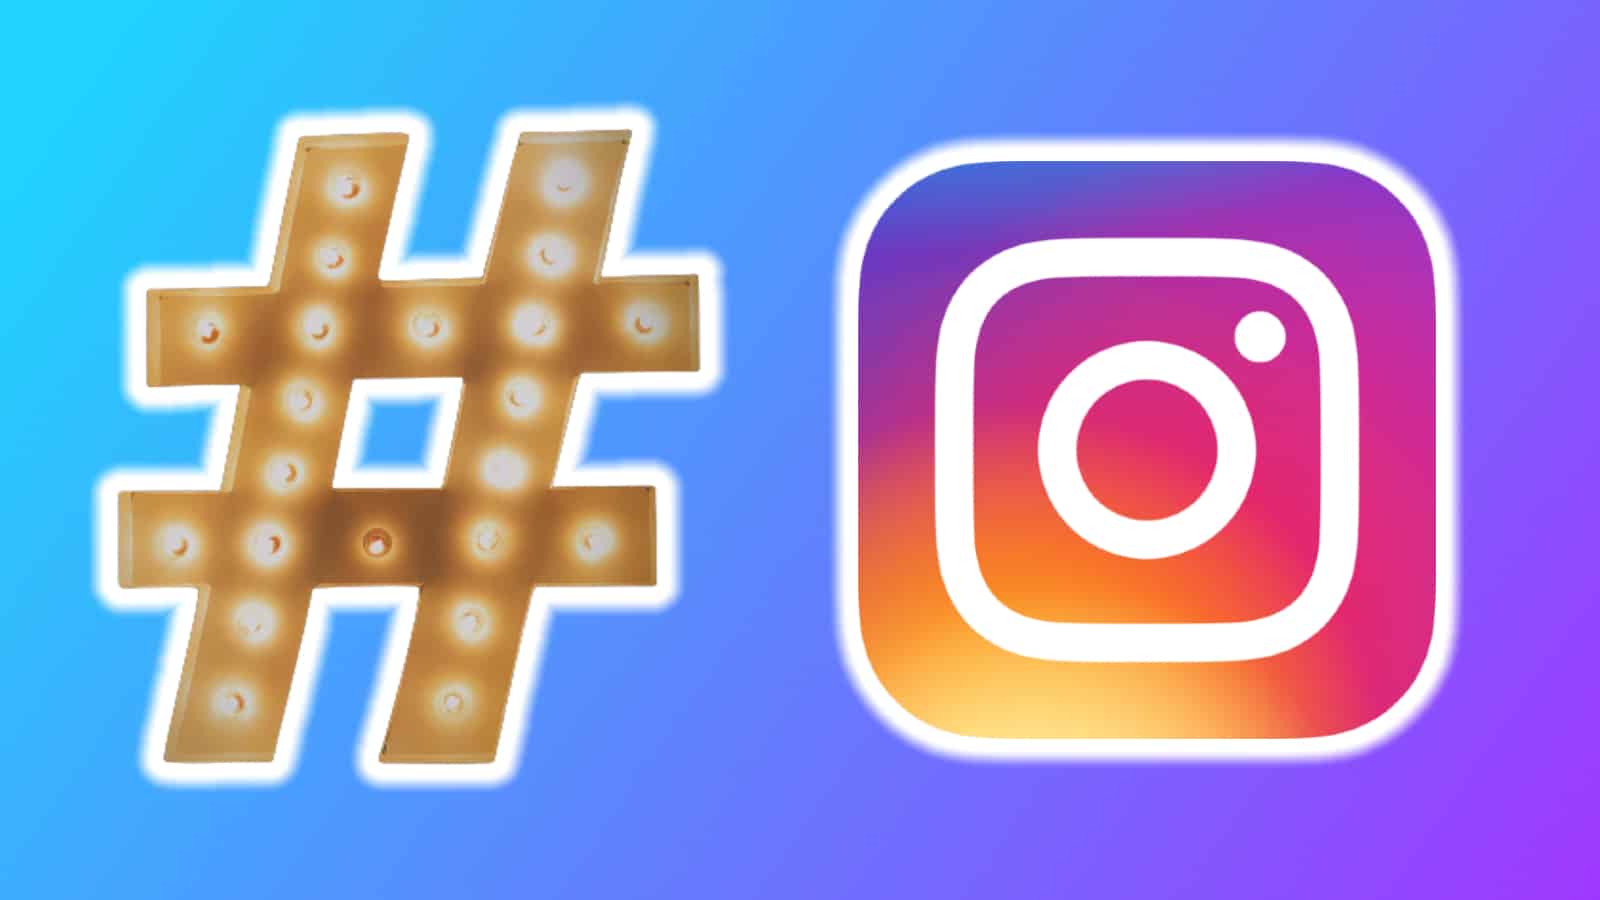 Hashtag next to Instagram logo